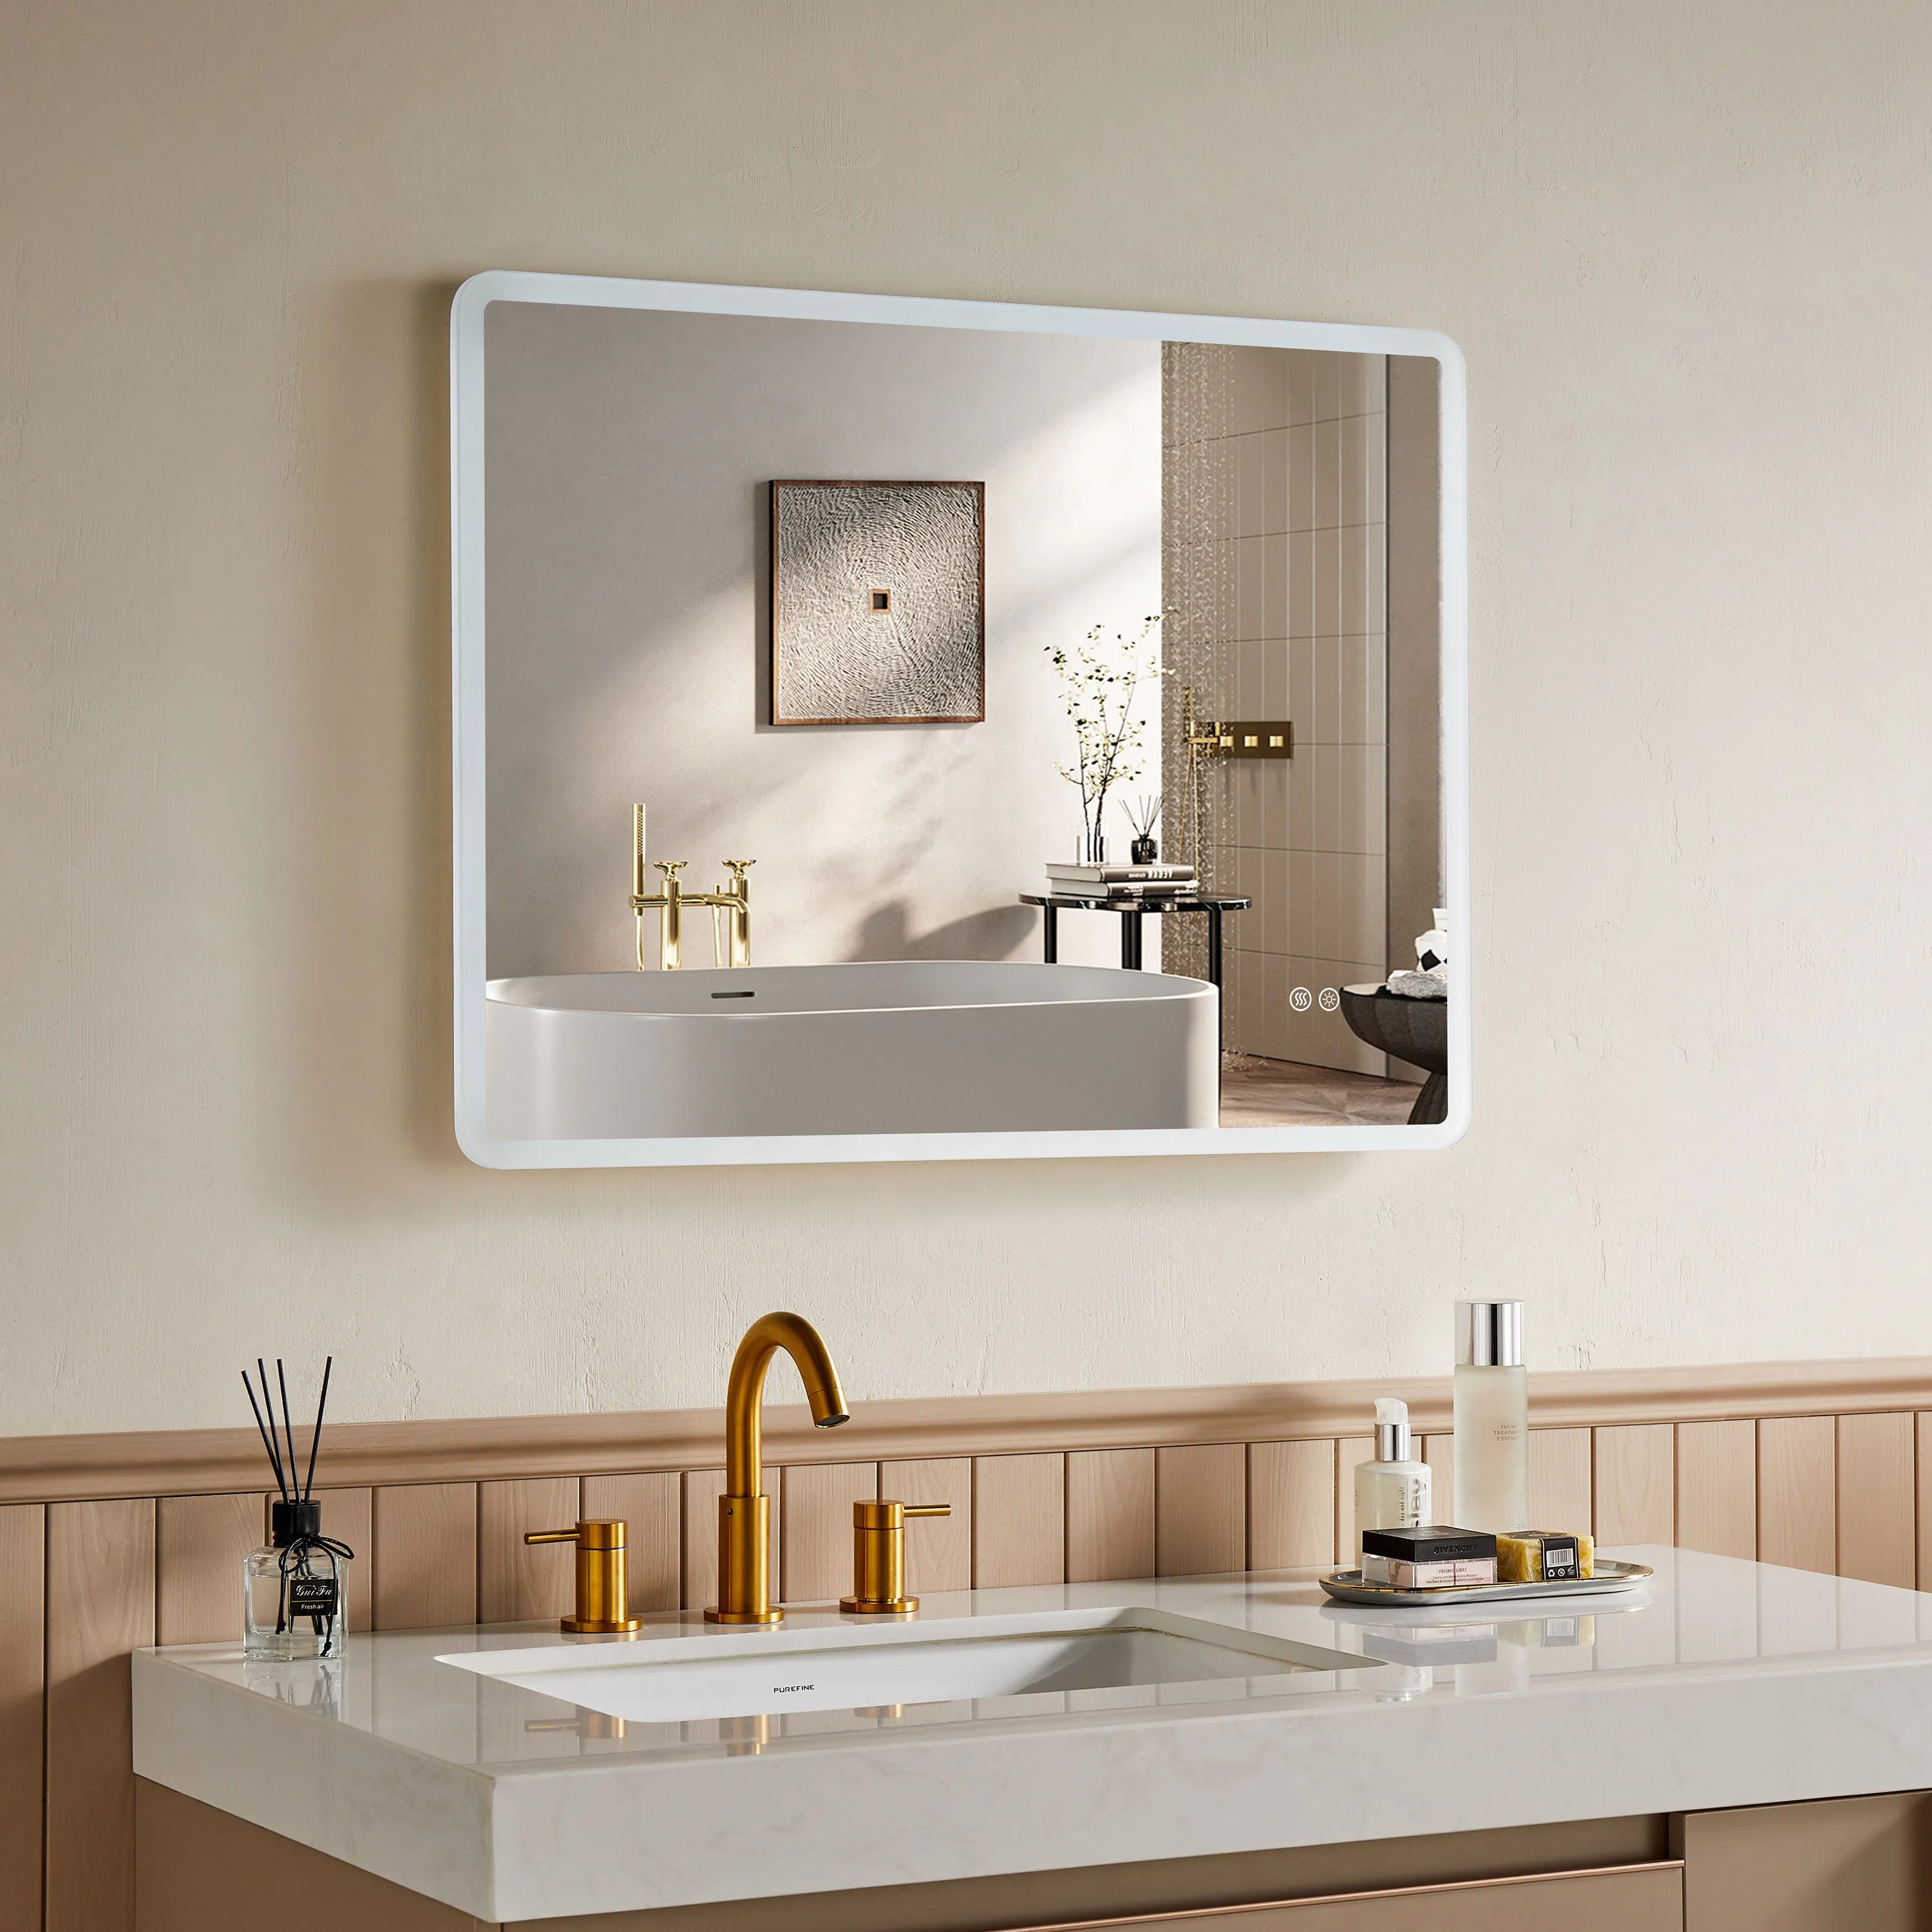 HOROW Rectangular Bathroom Mirror with Acrylic LED Strip Model AM6080S